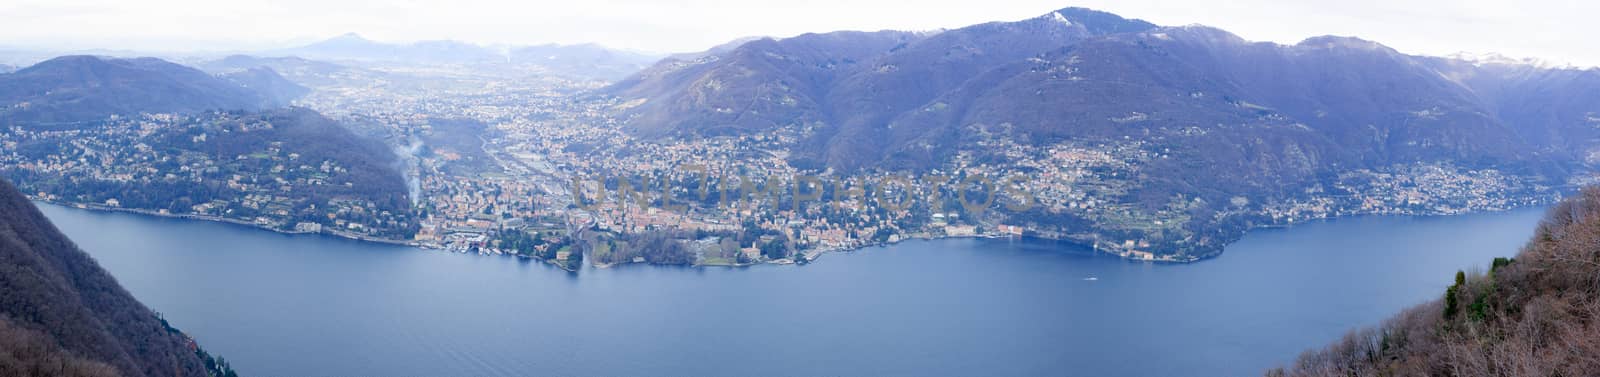 Lake Como by RnDmS